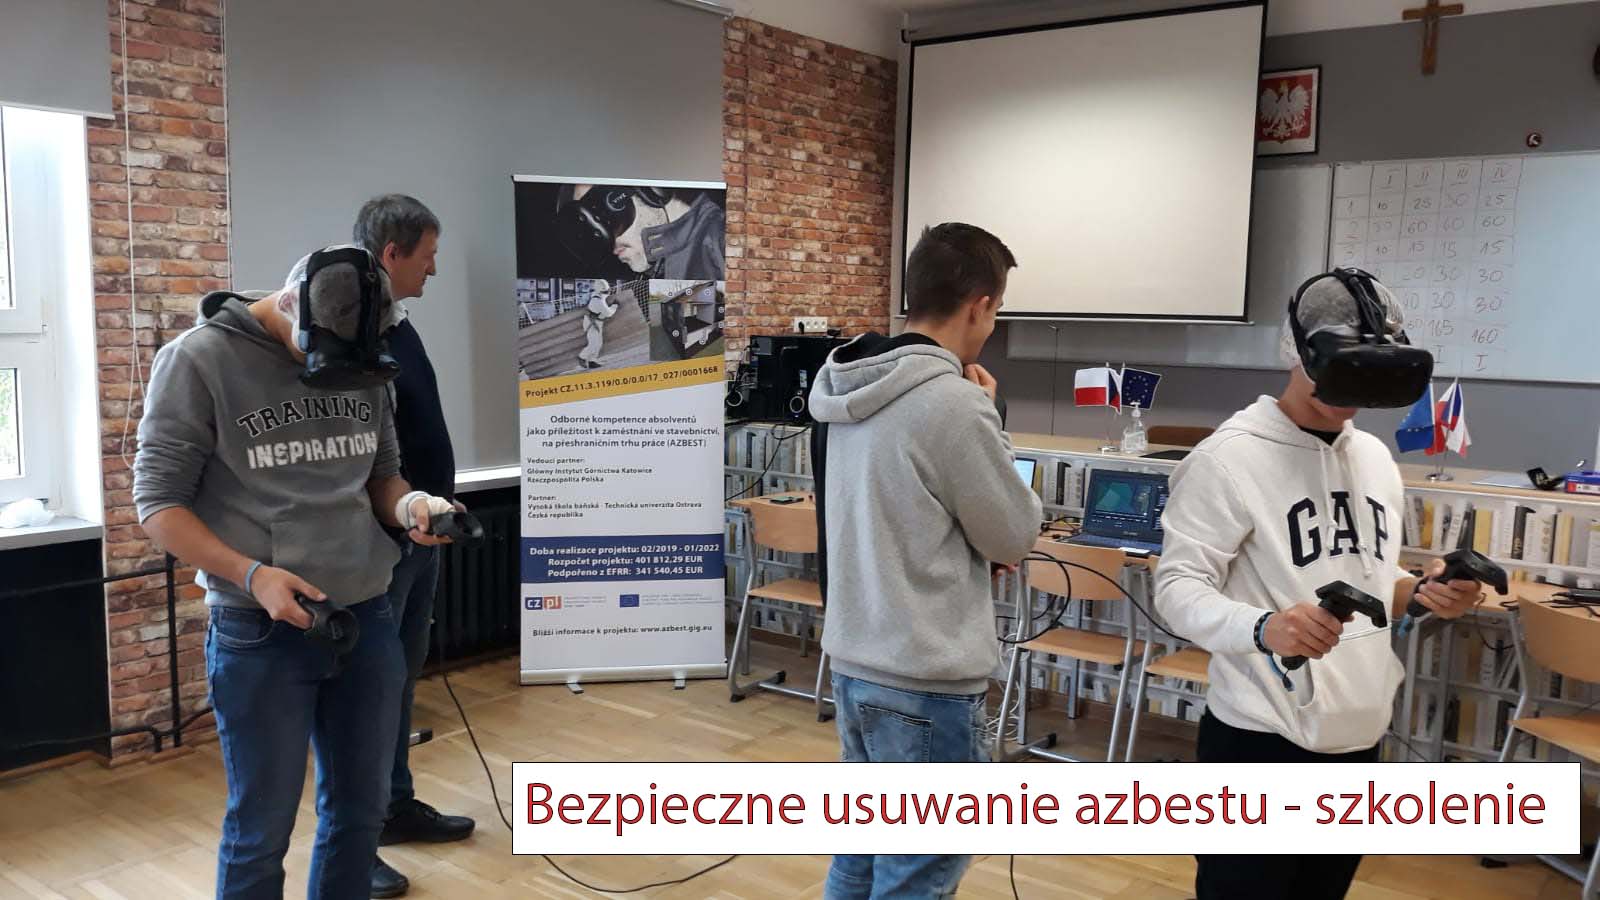 Bezpieczne usuwanie azbestu - szkolenie